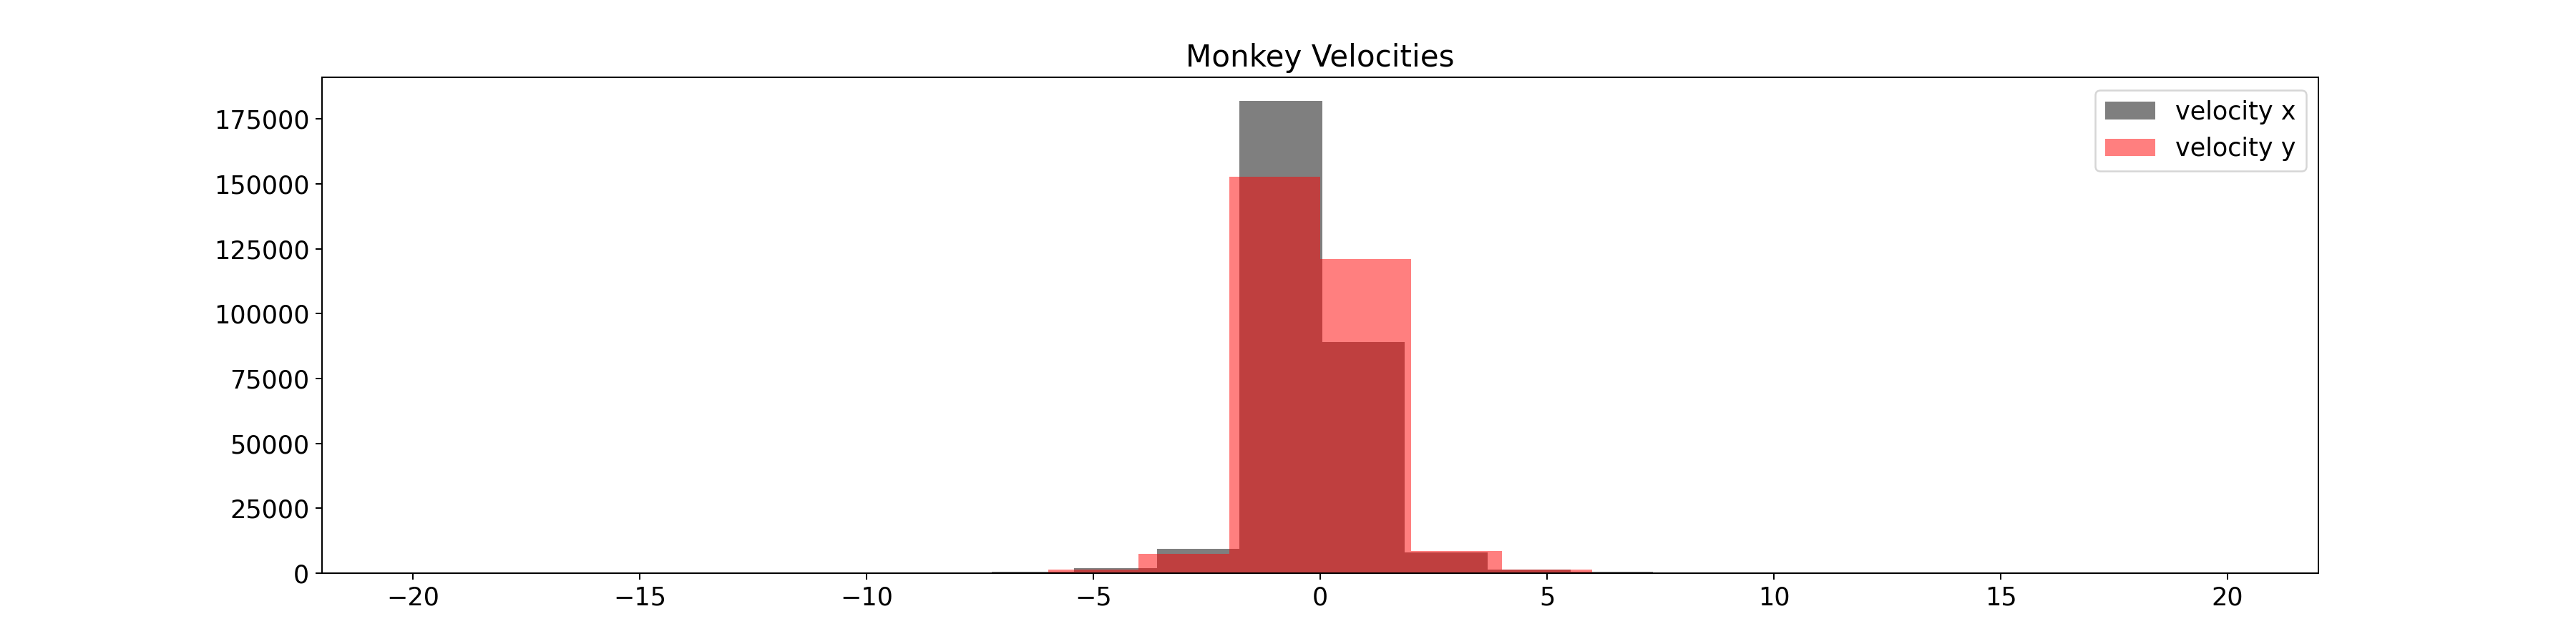 Monkey Velocities